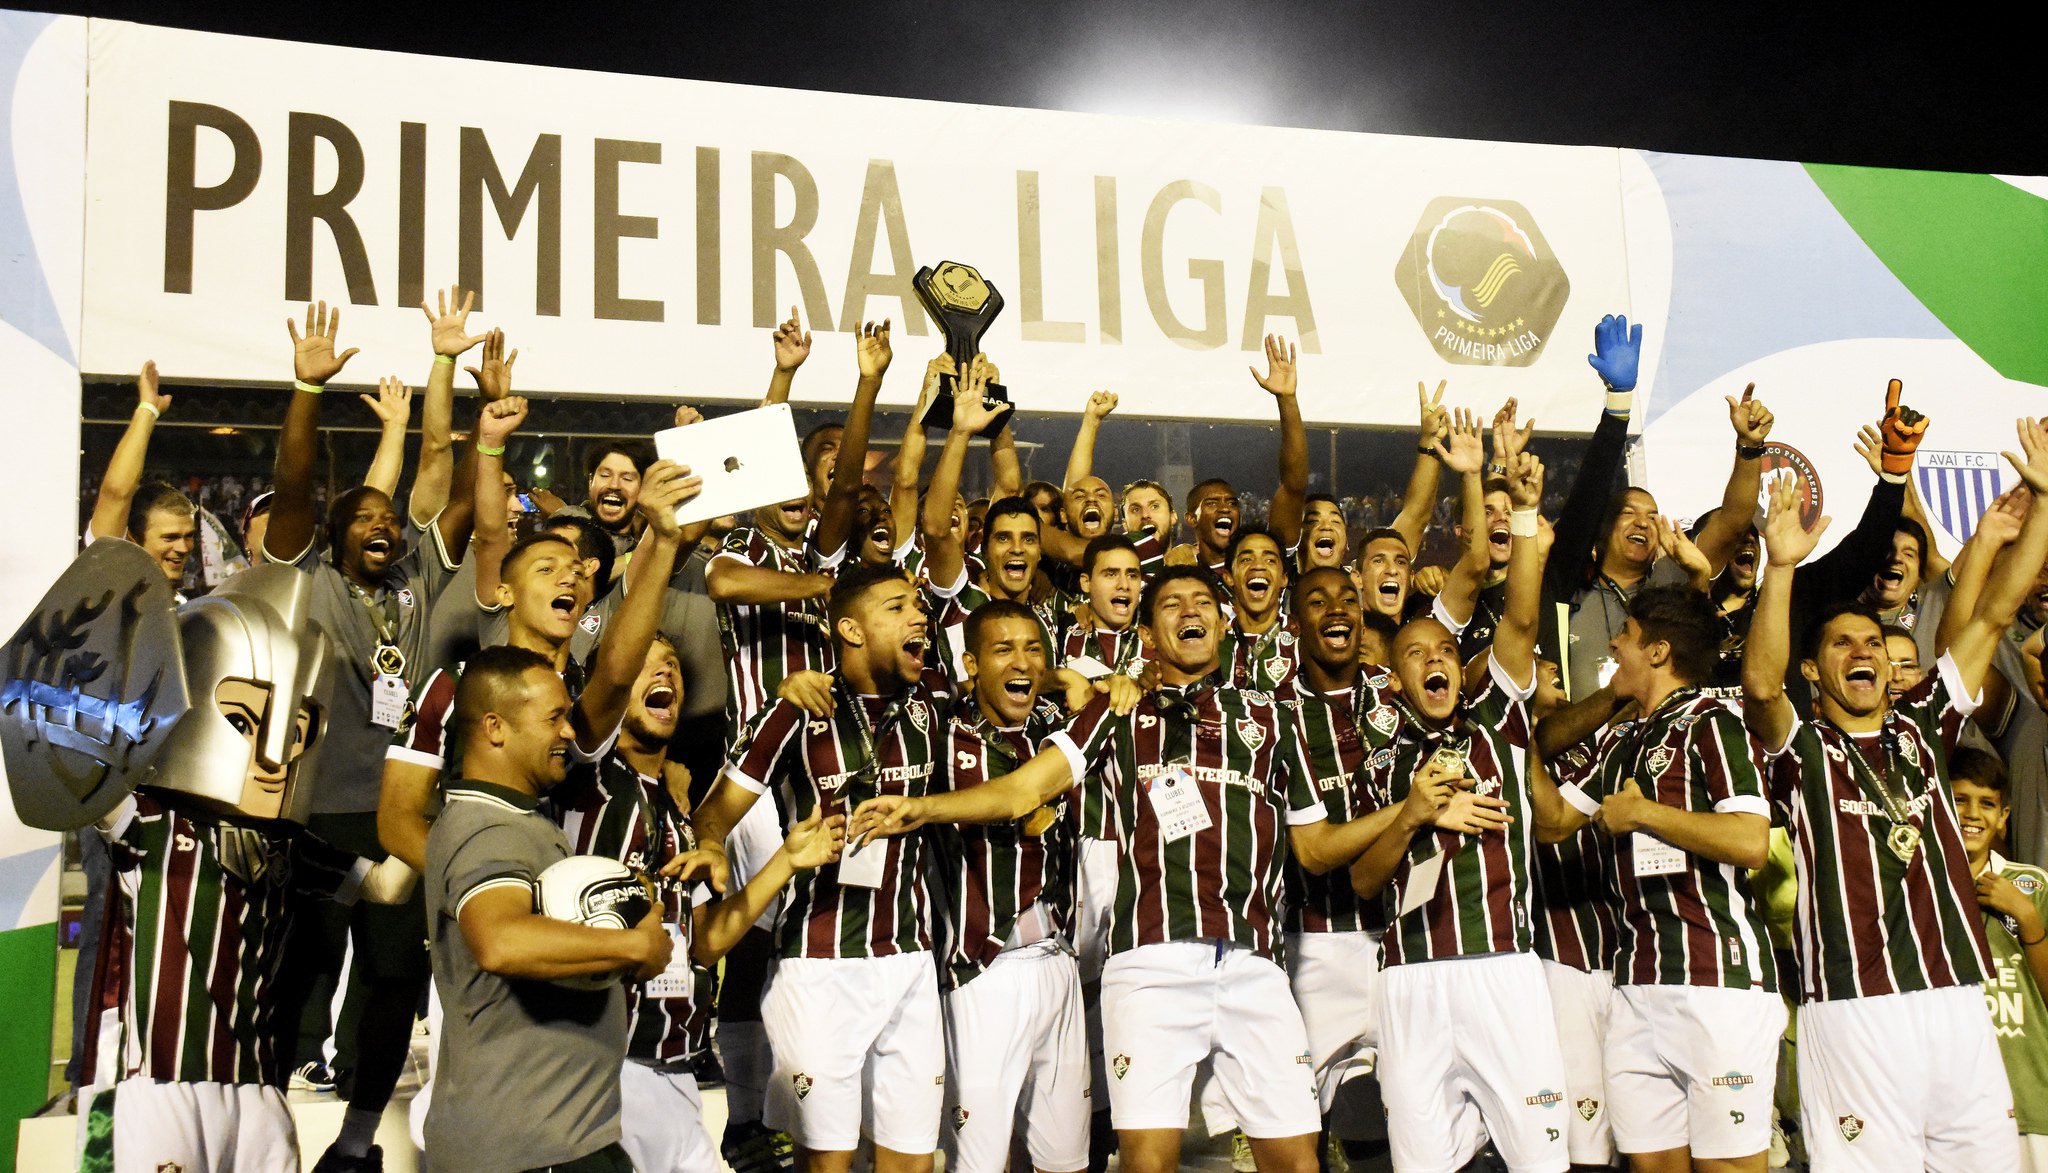 Primeira Liga do Brasil – Wikipédia, a enciclopédia livre